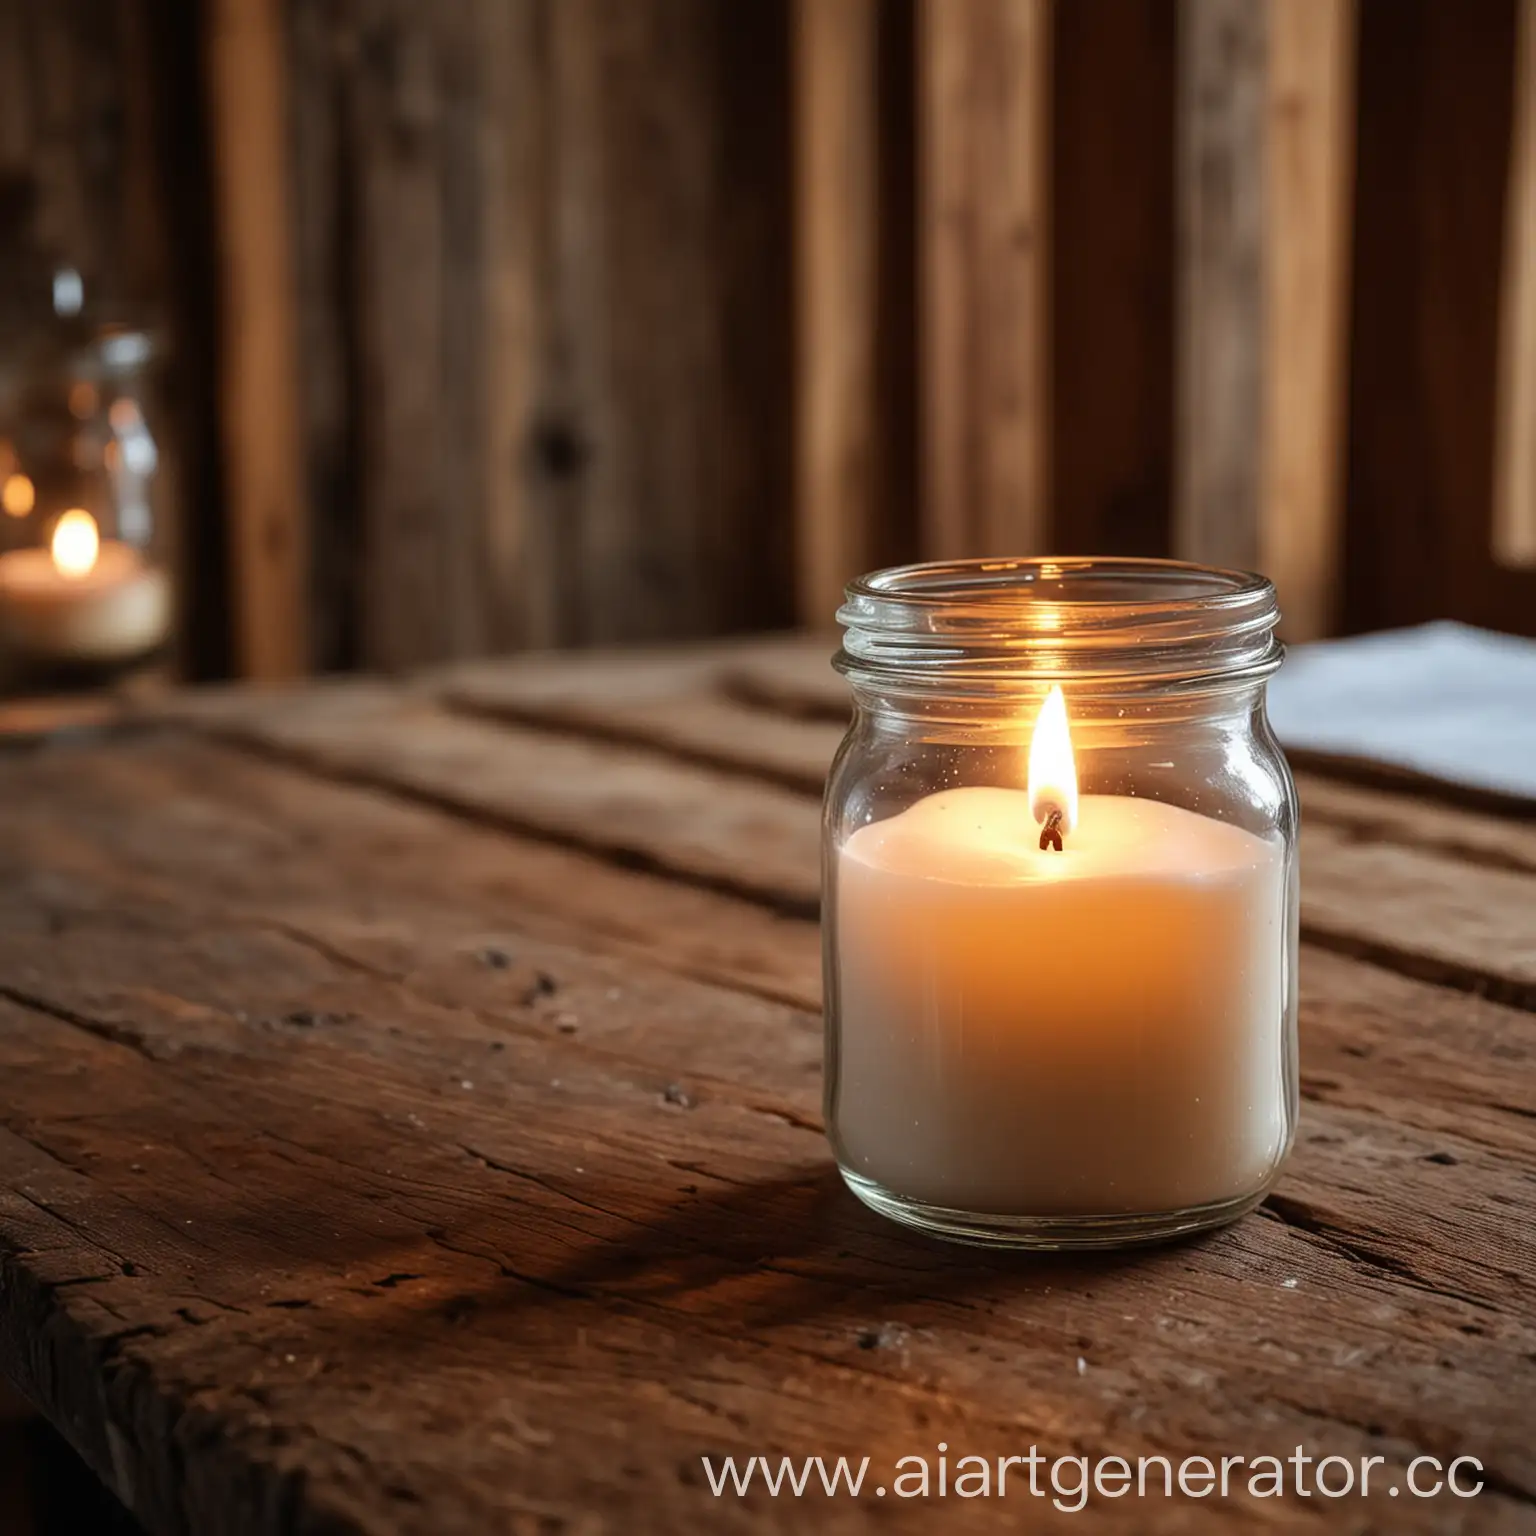 свеча в баночке стоит на деревянном столе в деревянном доме и все внимание фокусируется  на свече